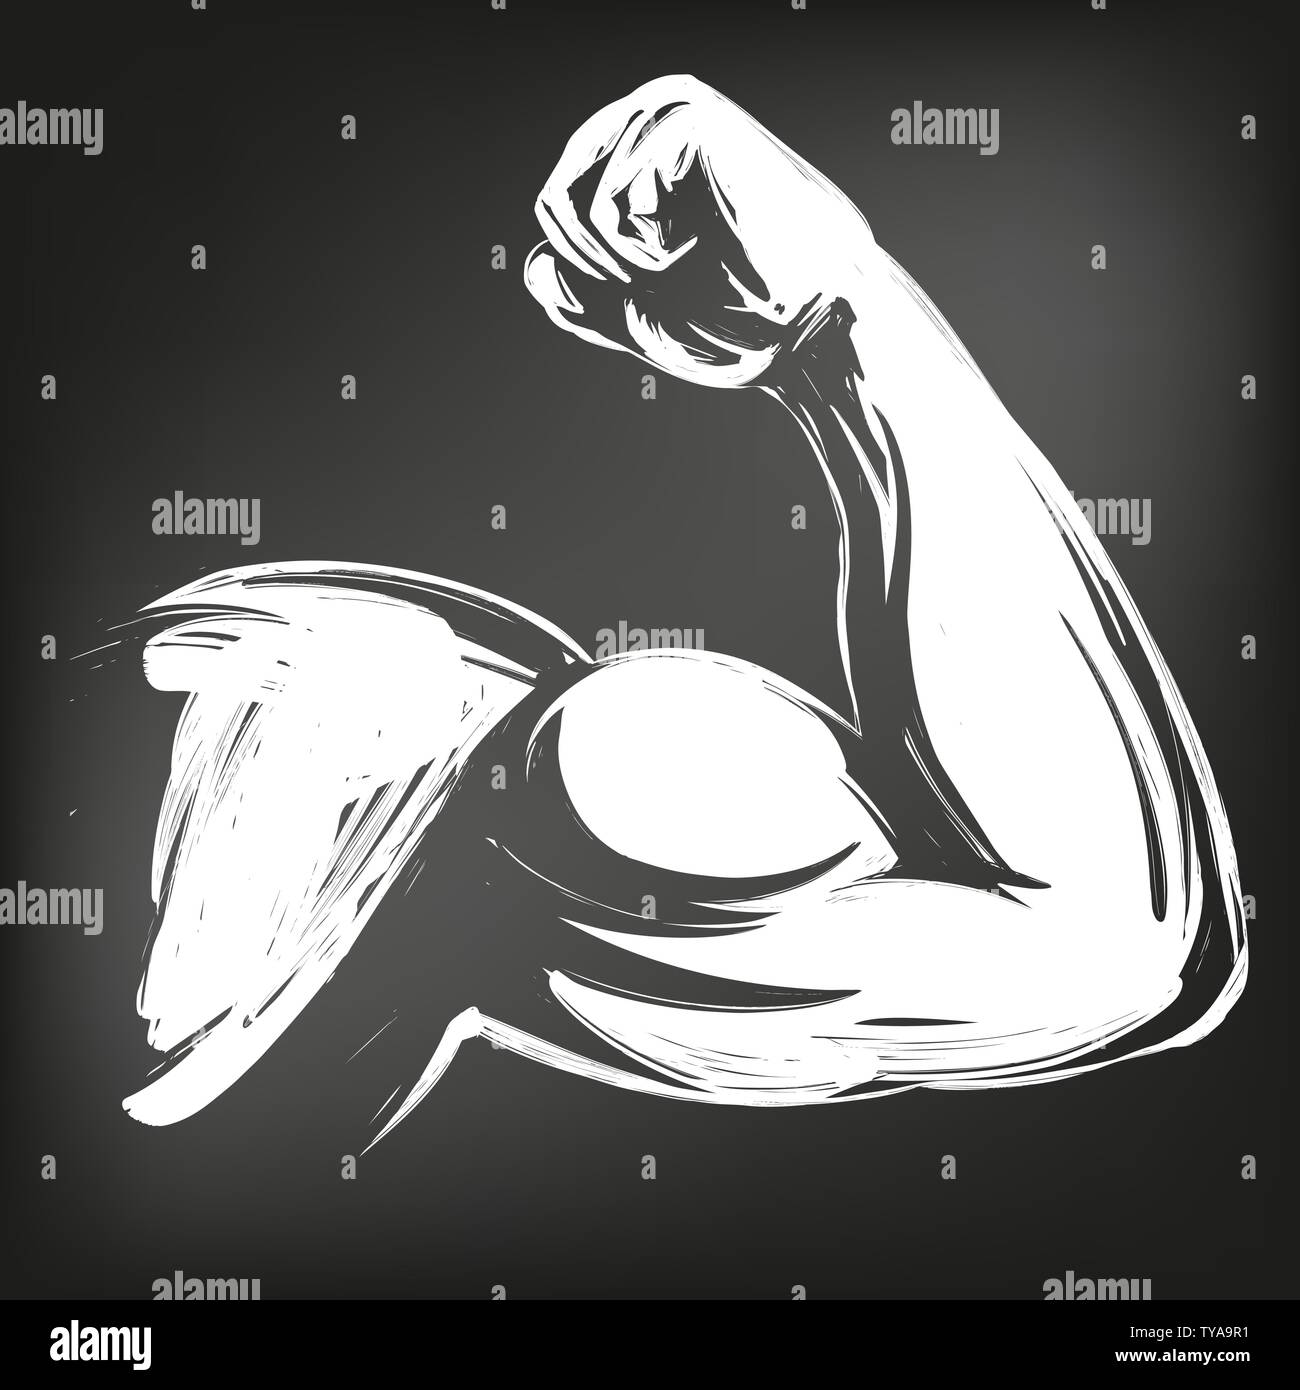 Braccio, bicipite, forte mano icona simbolo del fumetto disegnato a mano illustrazione vettoriale sketch, disegnati in gesso su una lavagna nera Illustrazione Vettoriale